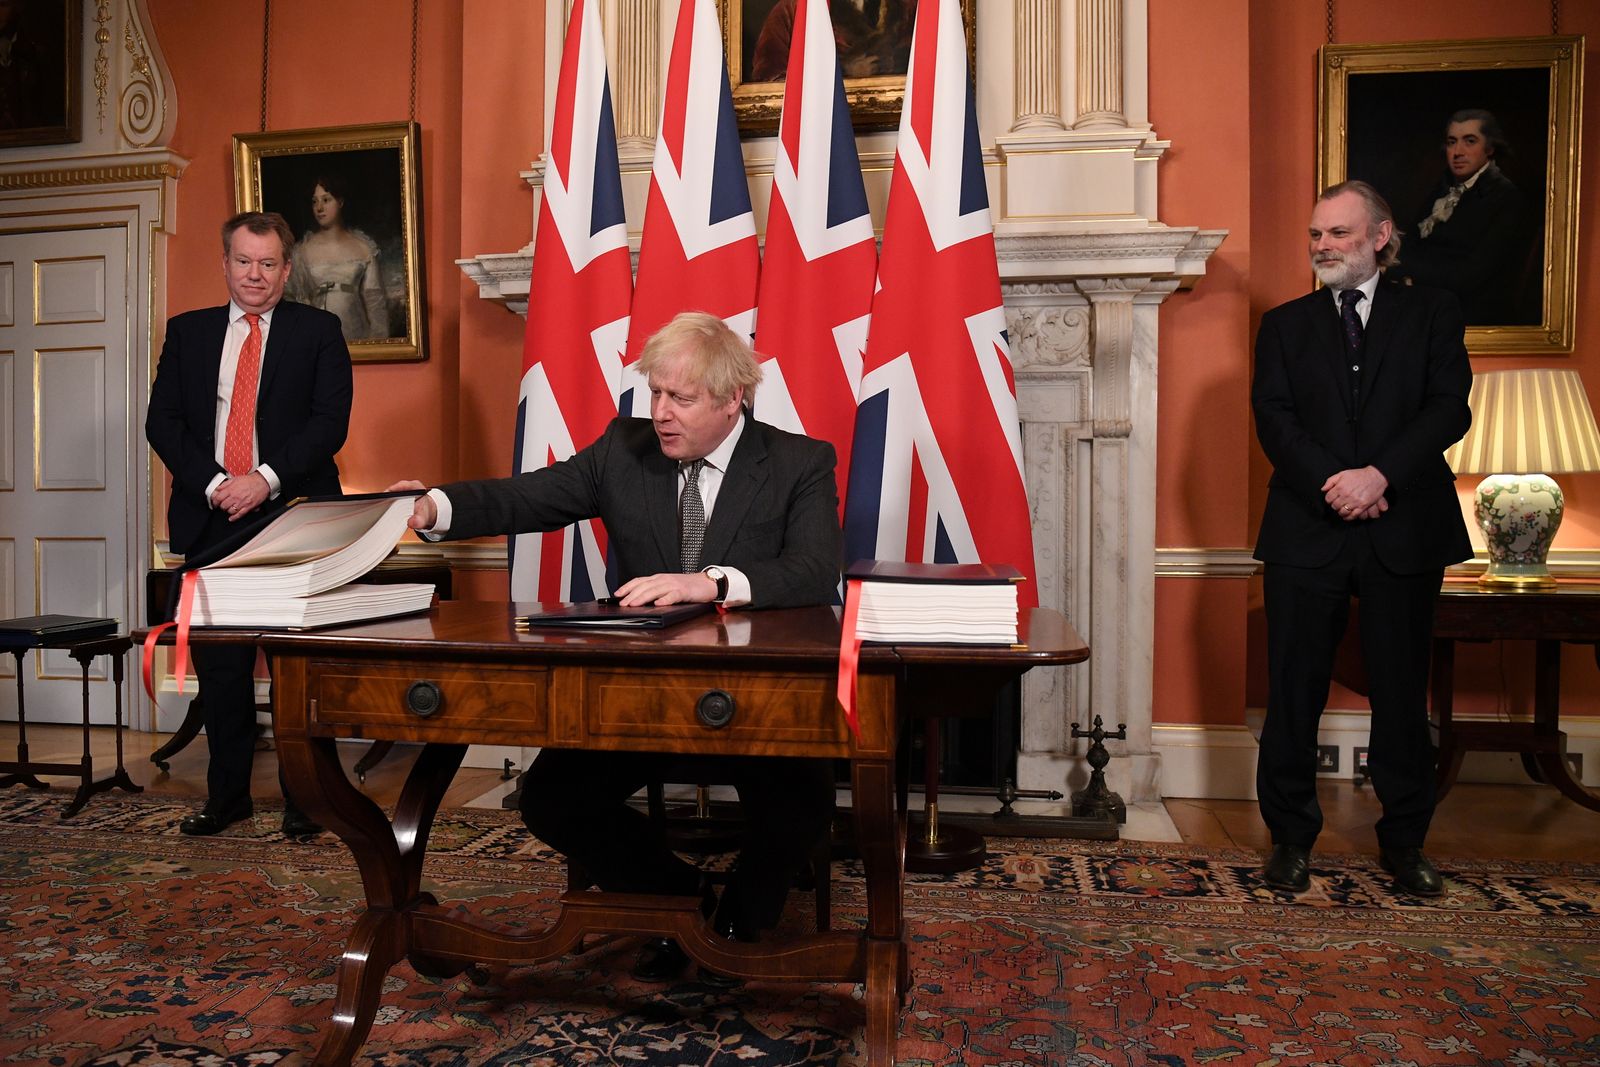 رئيس الوزراء البريطاني، بوريس جونسون، يوقع اتفاقية التجارة مع الاتحاد الأوروبي في رقم 10 داونينج ستريت في لندن، بريطانيا. 30 ديسمبر 2020 - REUTERS